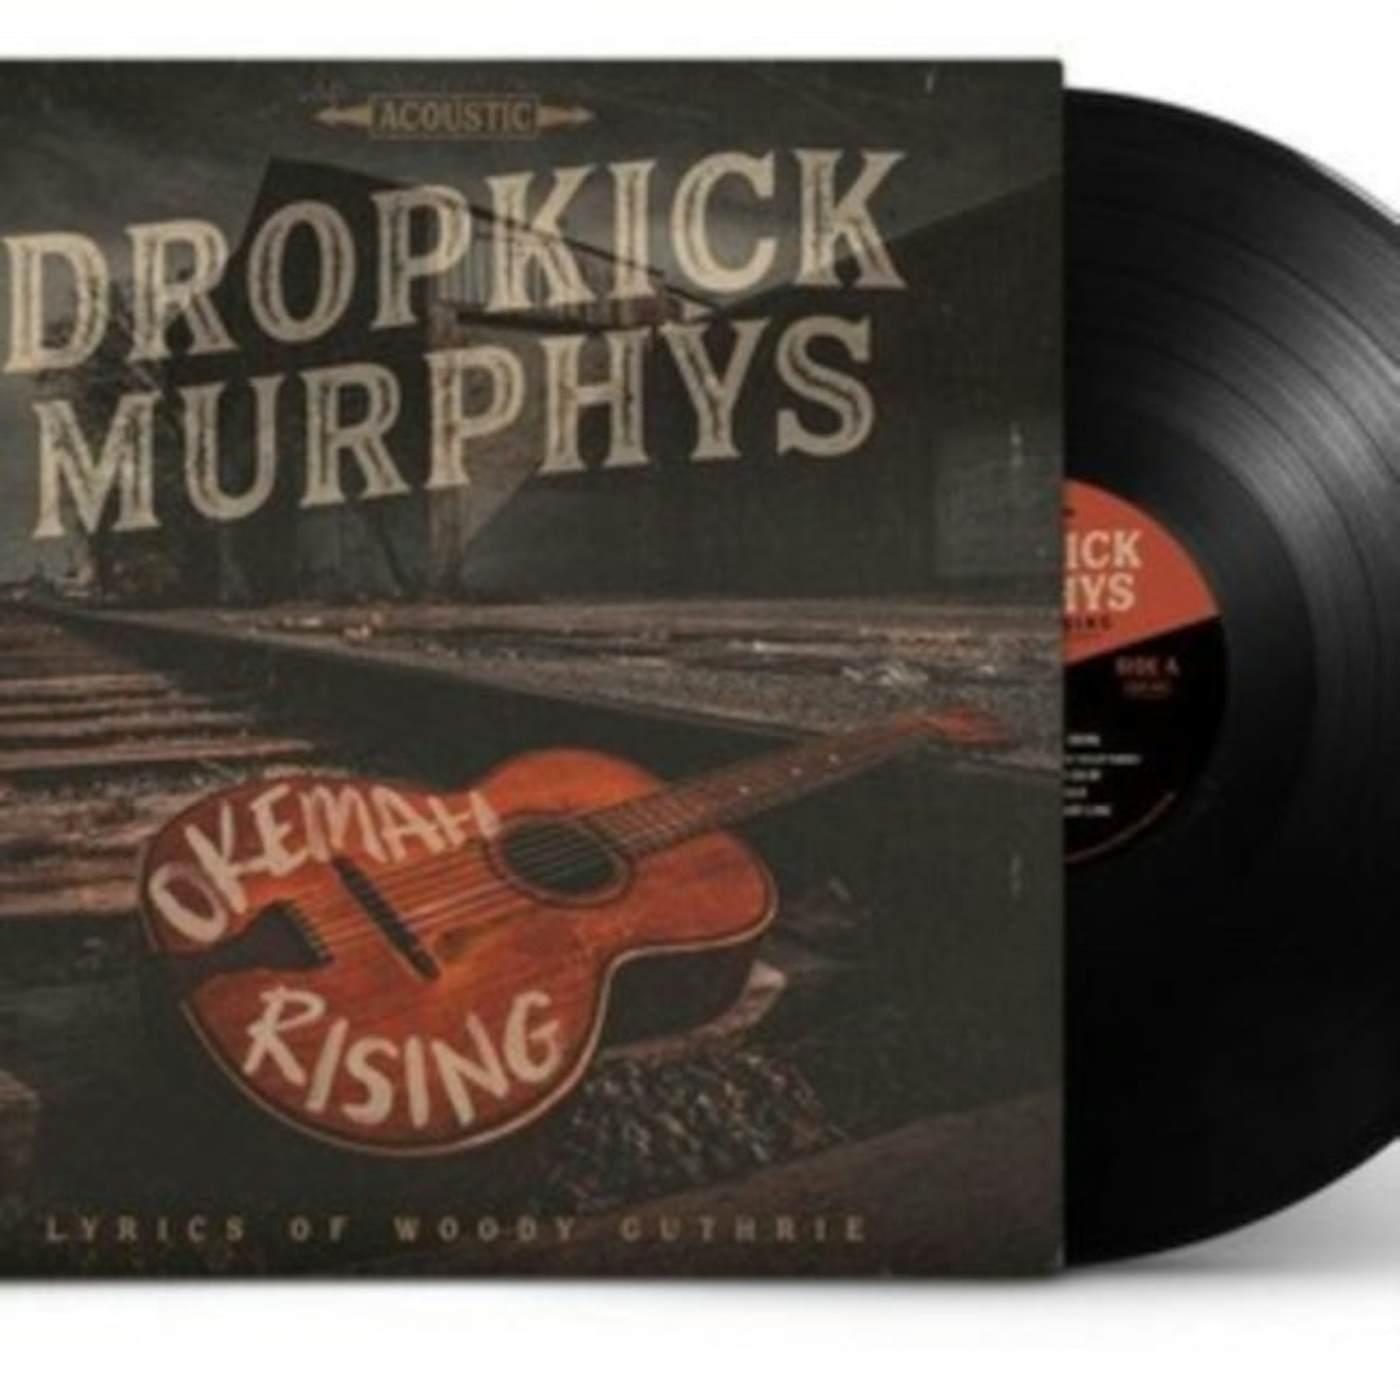 Dropkick Murphys LP - Okemah Rising (Vinyl)